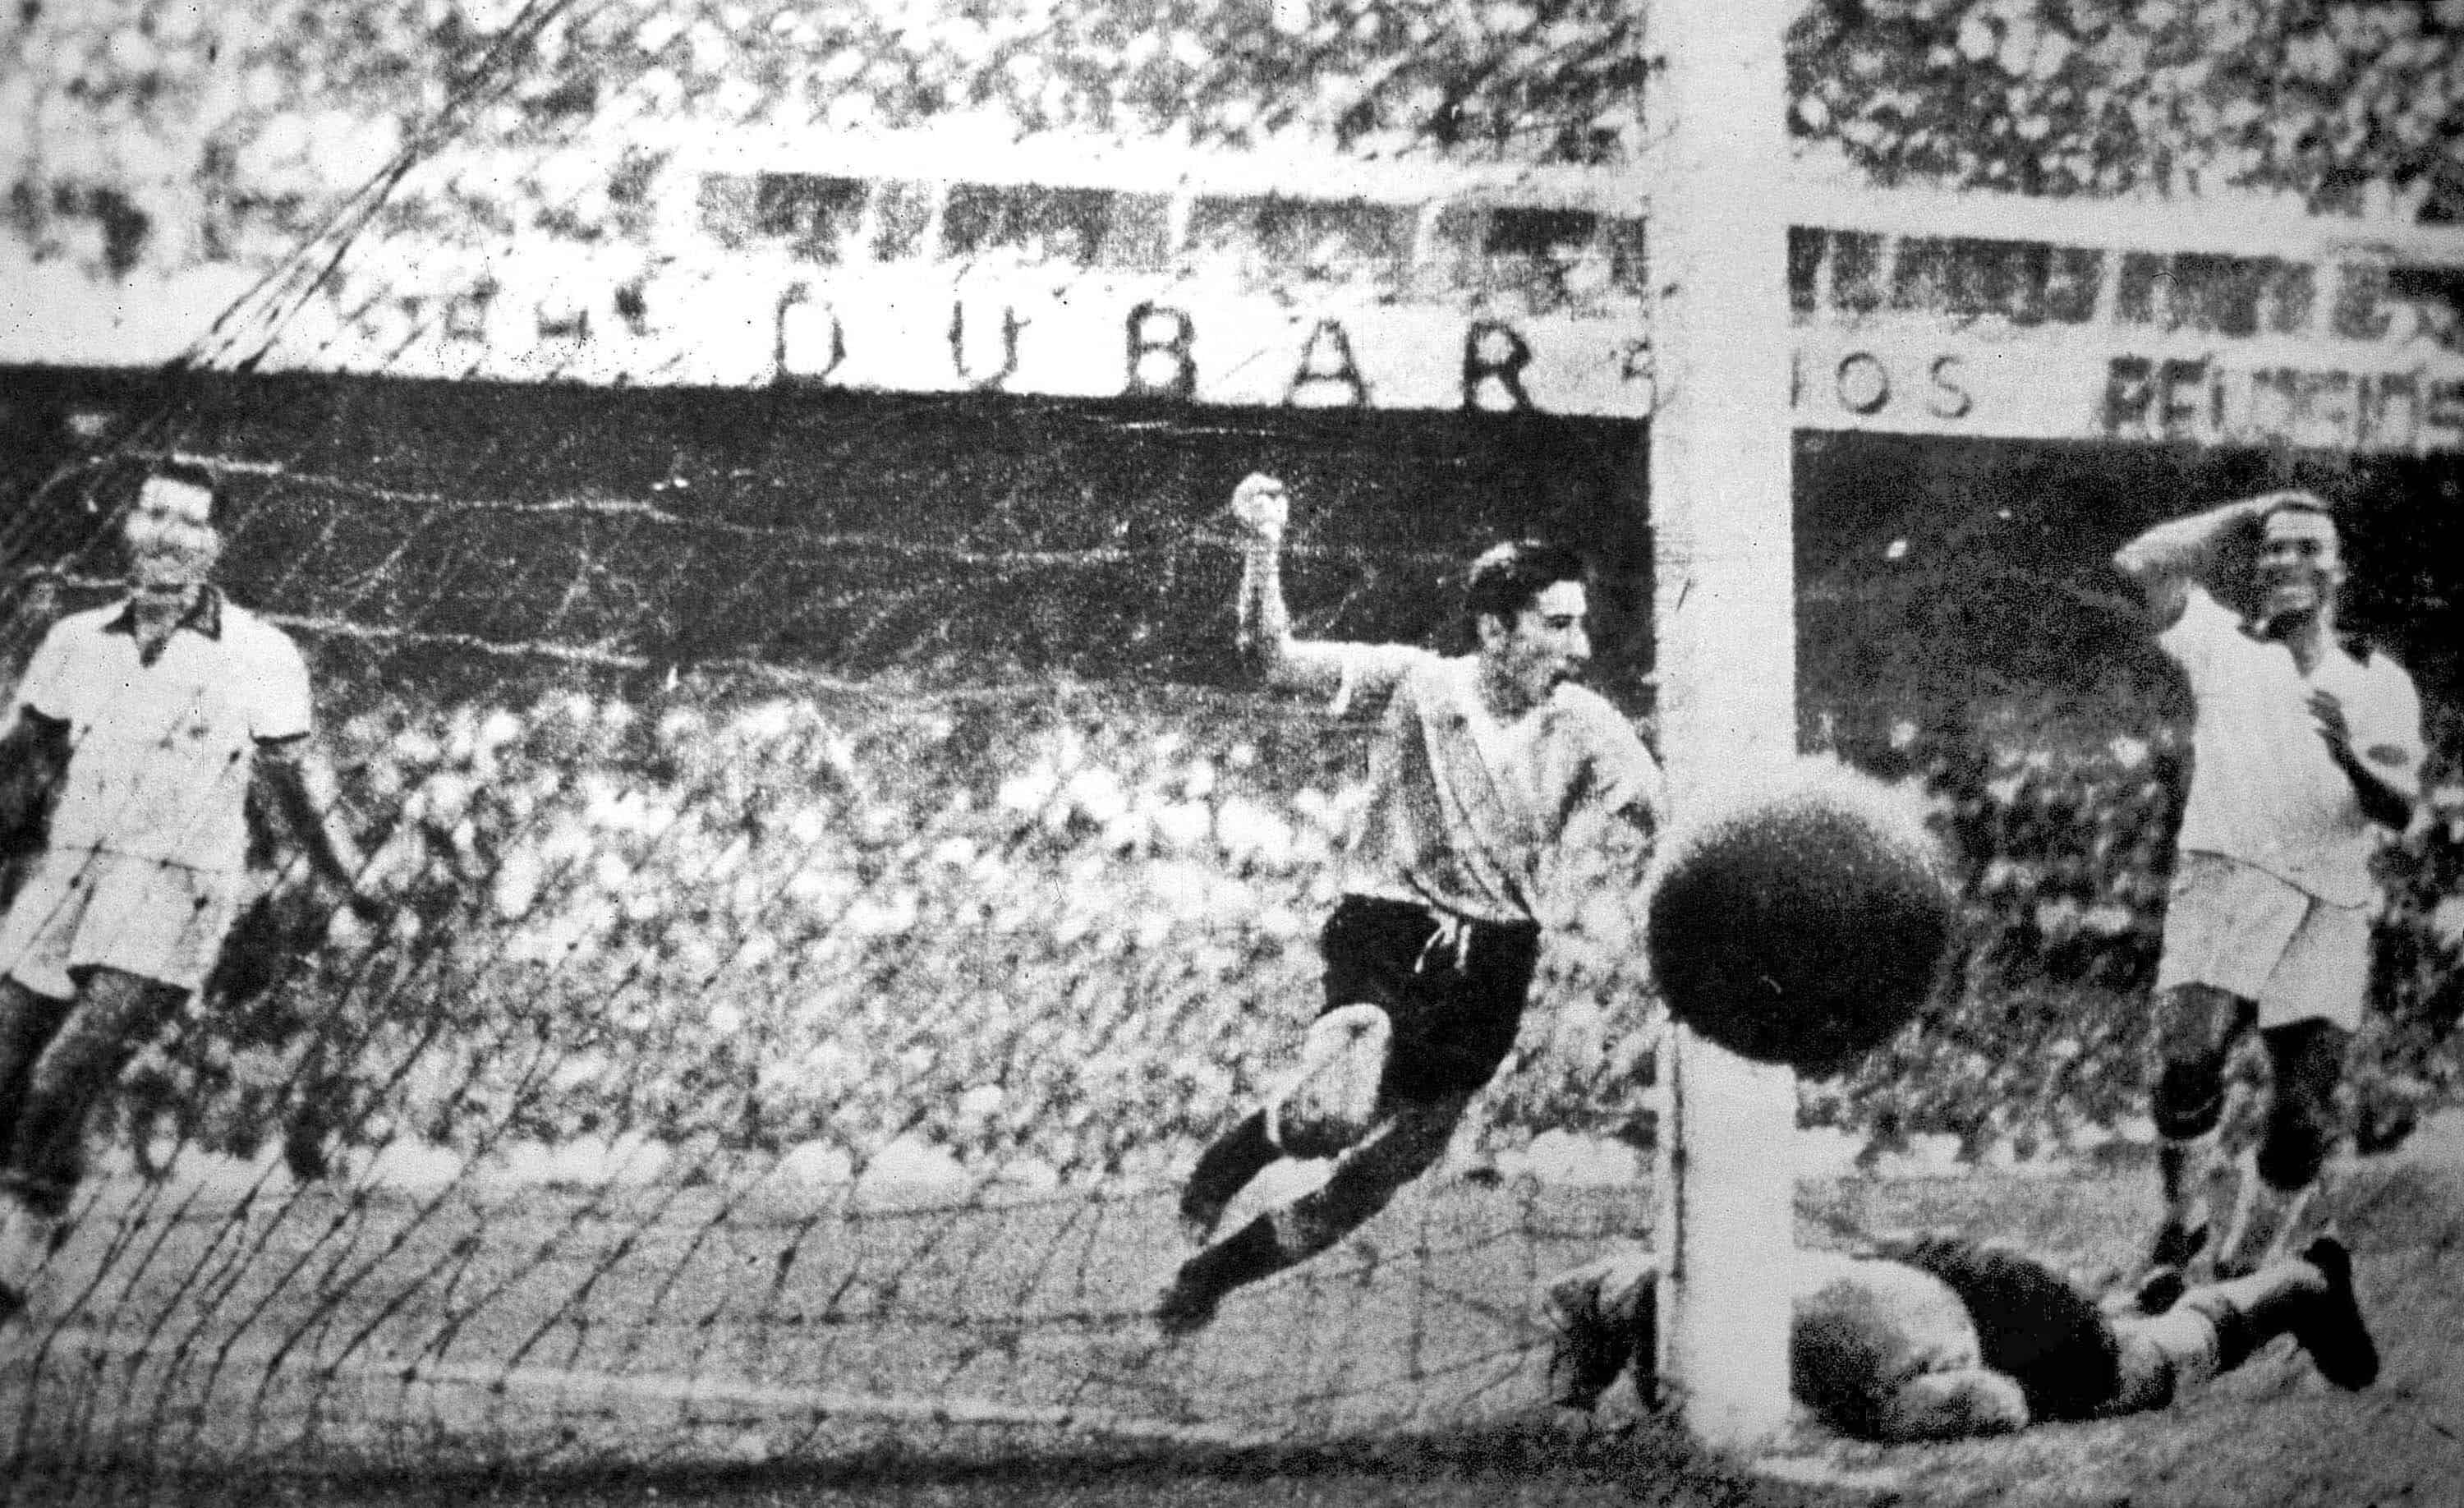 El jugador uruguayo Ghiggia anota durante el partido de fútbol final de la Copa del Mundo contra Brasil, en el estadio Maracaná de Río de Janeiro, Brasil, el 16 de julio de 1950. Uruguay ganó 2-1 un partido que pasó a la historia como el Maracanazo